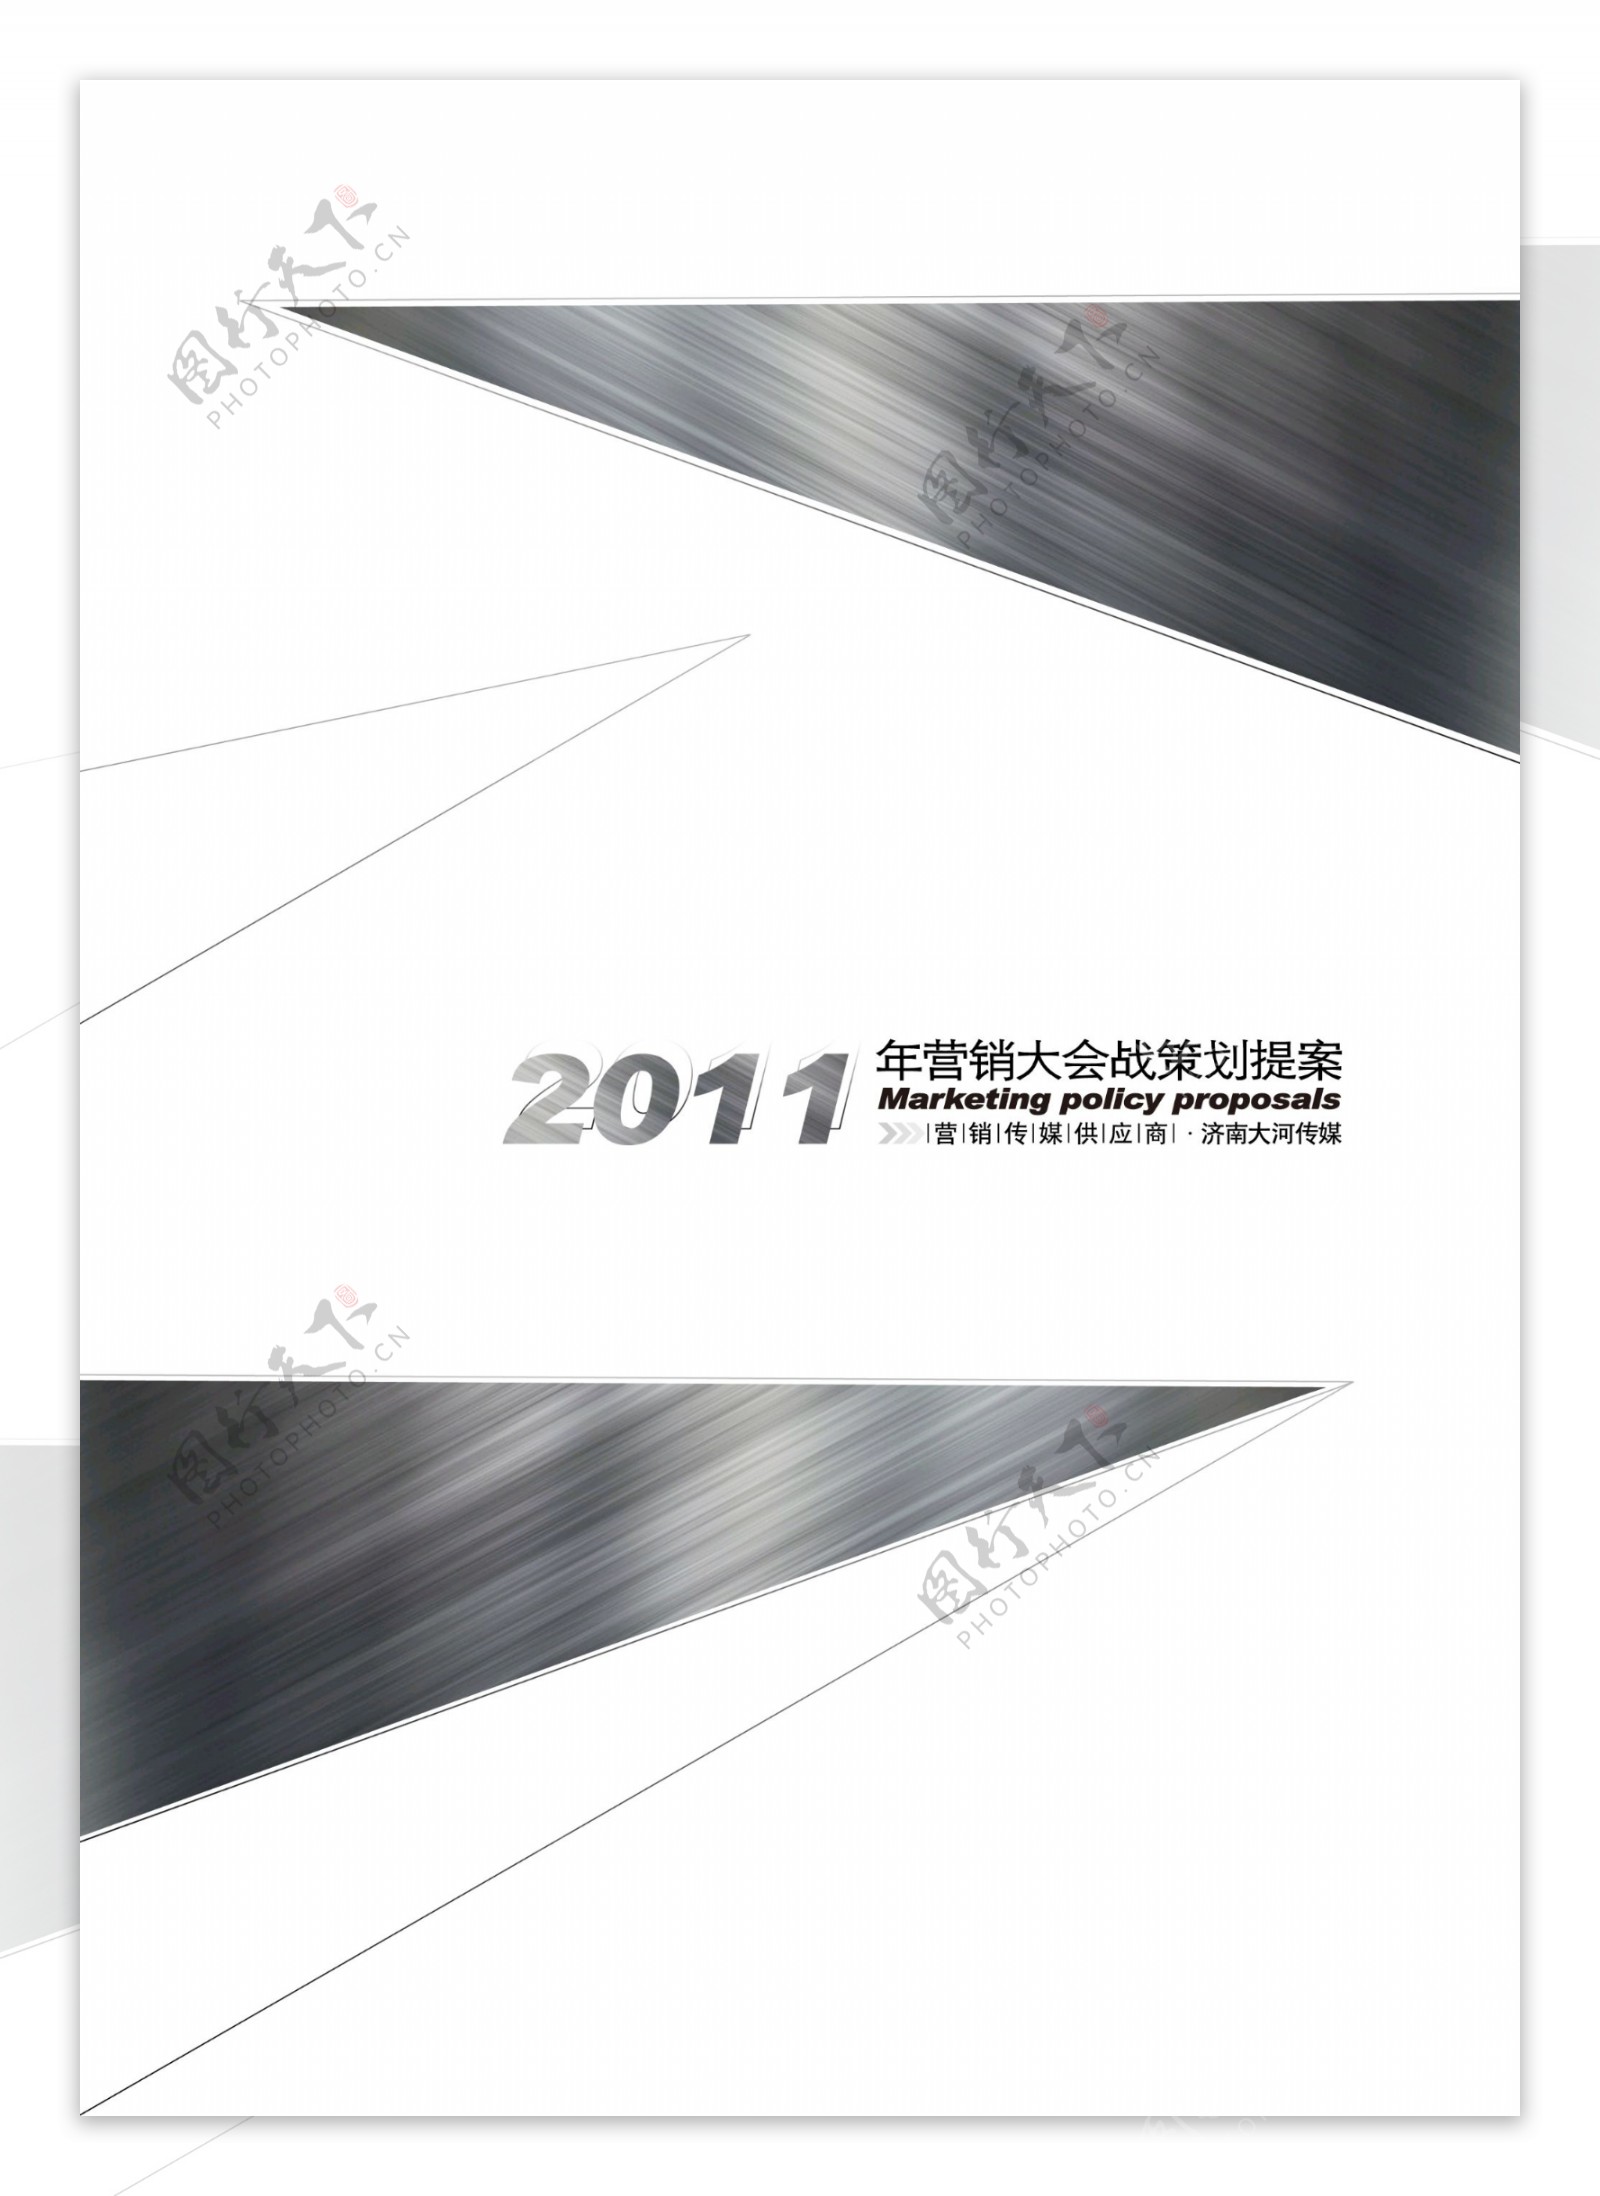 开瑞汽车2011年营销题案投标书封面图片